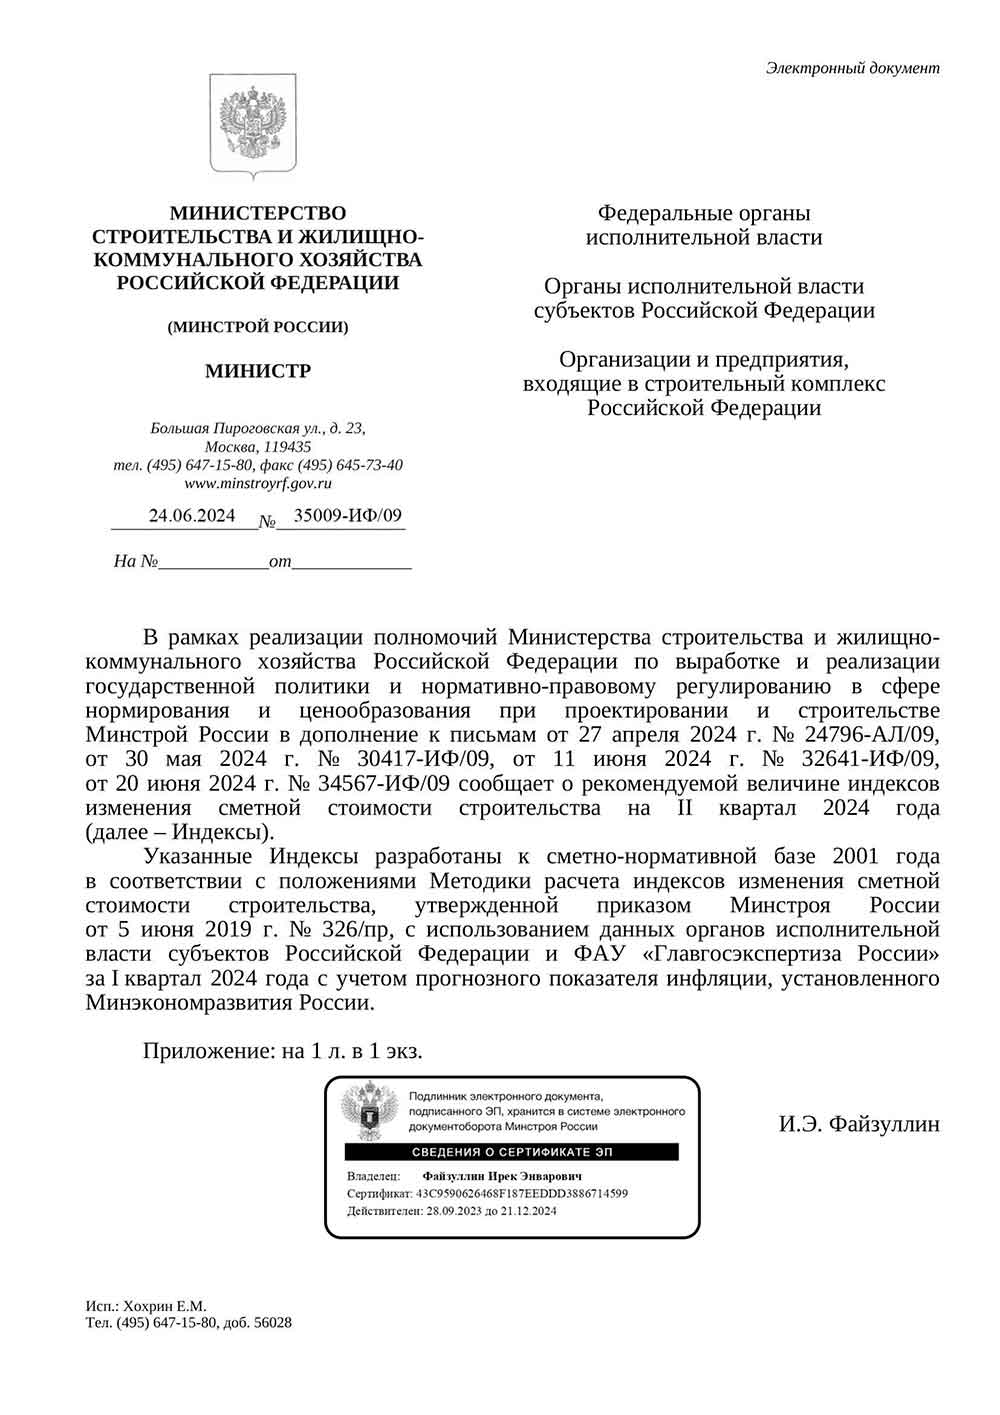 Письмо Минстроя РФ №35009-ИФ/09 от 24.06.2024 г. Скачать ПДФ